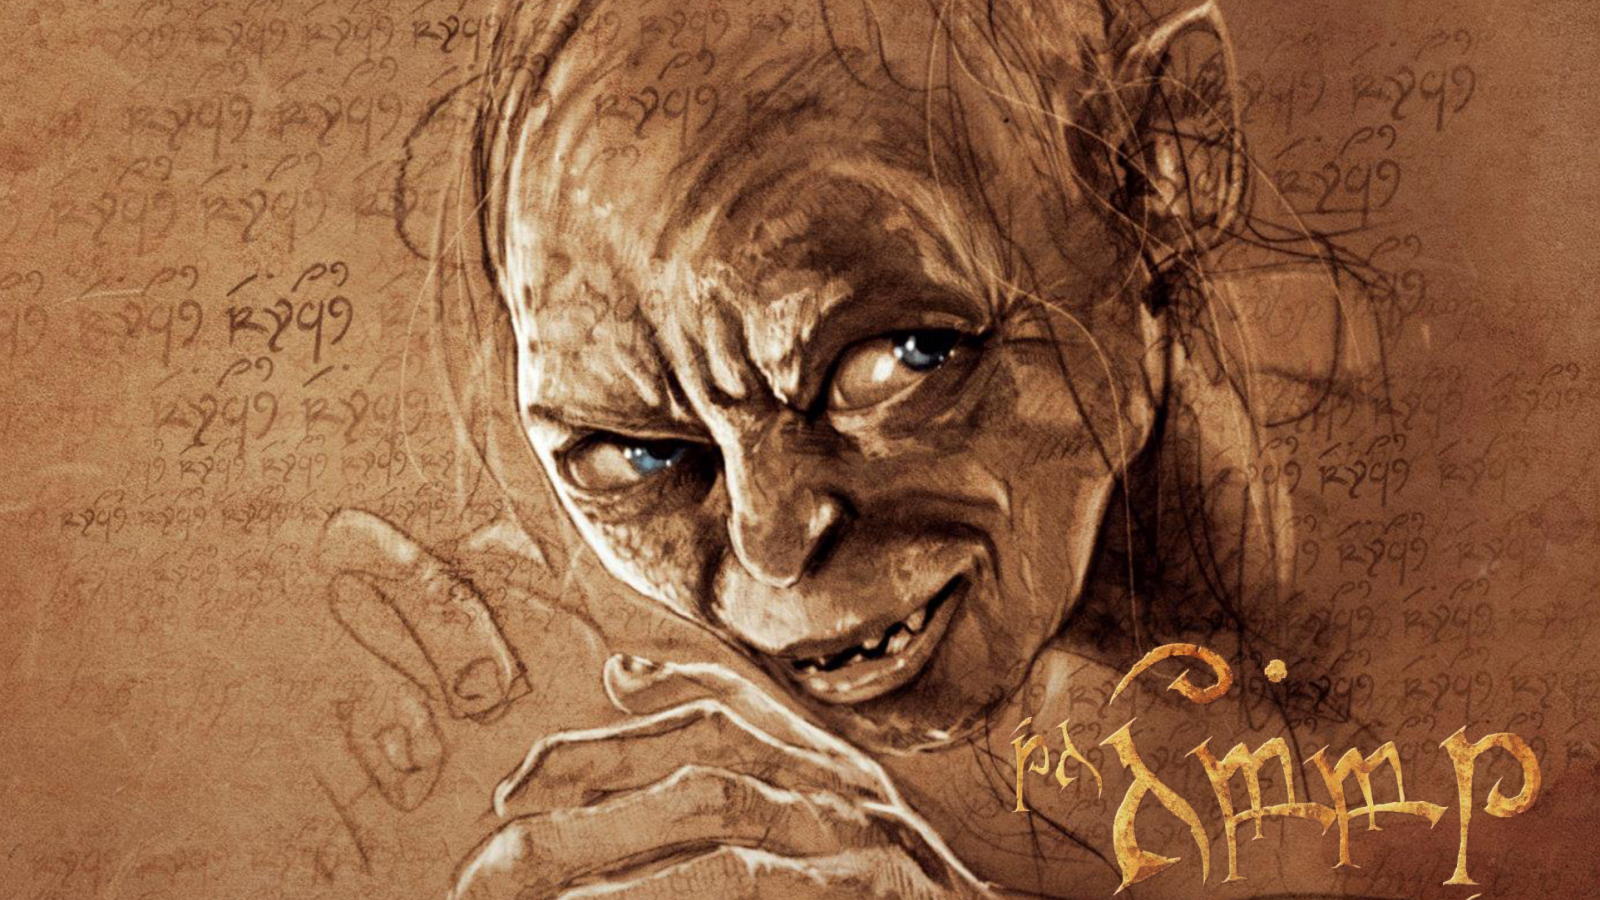 The Hobbit Gollum Artwork screenshot #1 1600x900